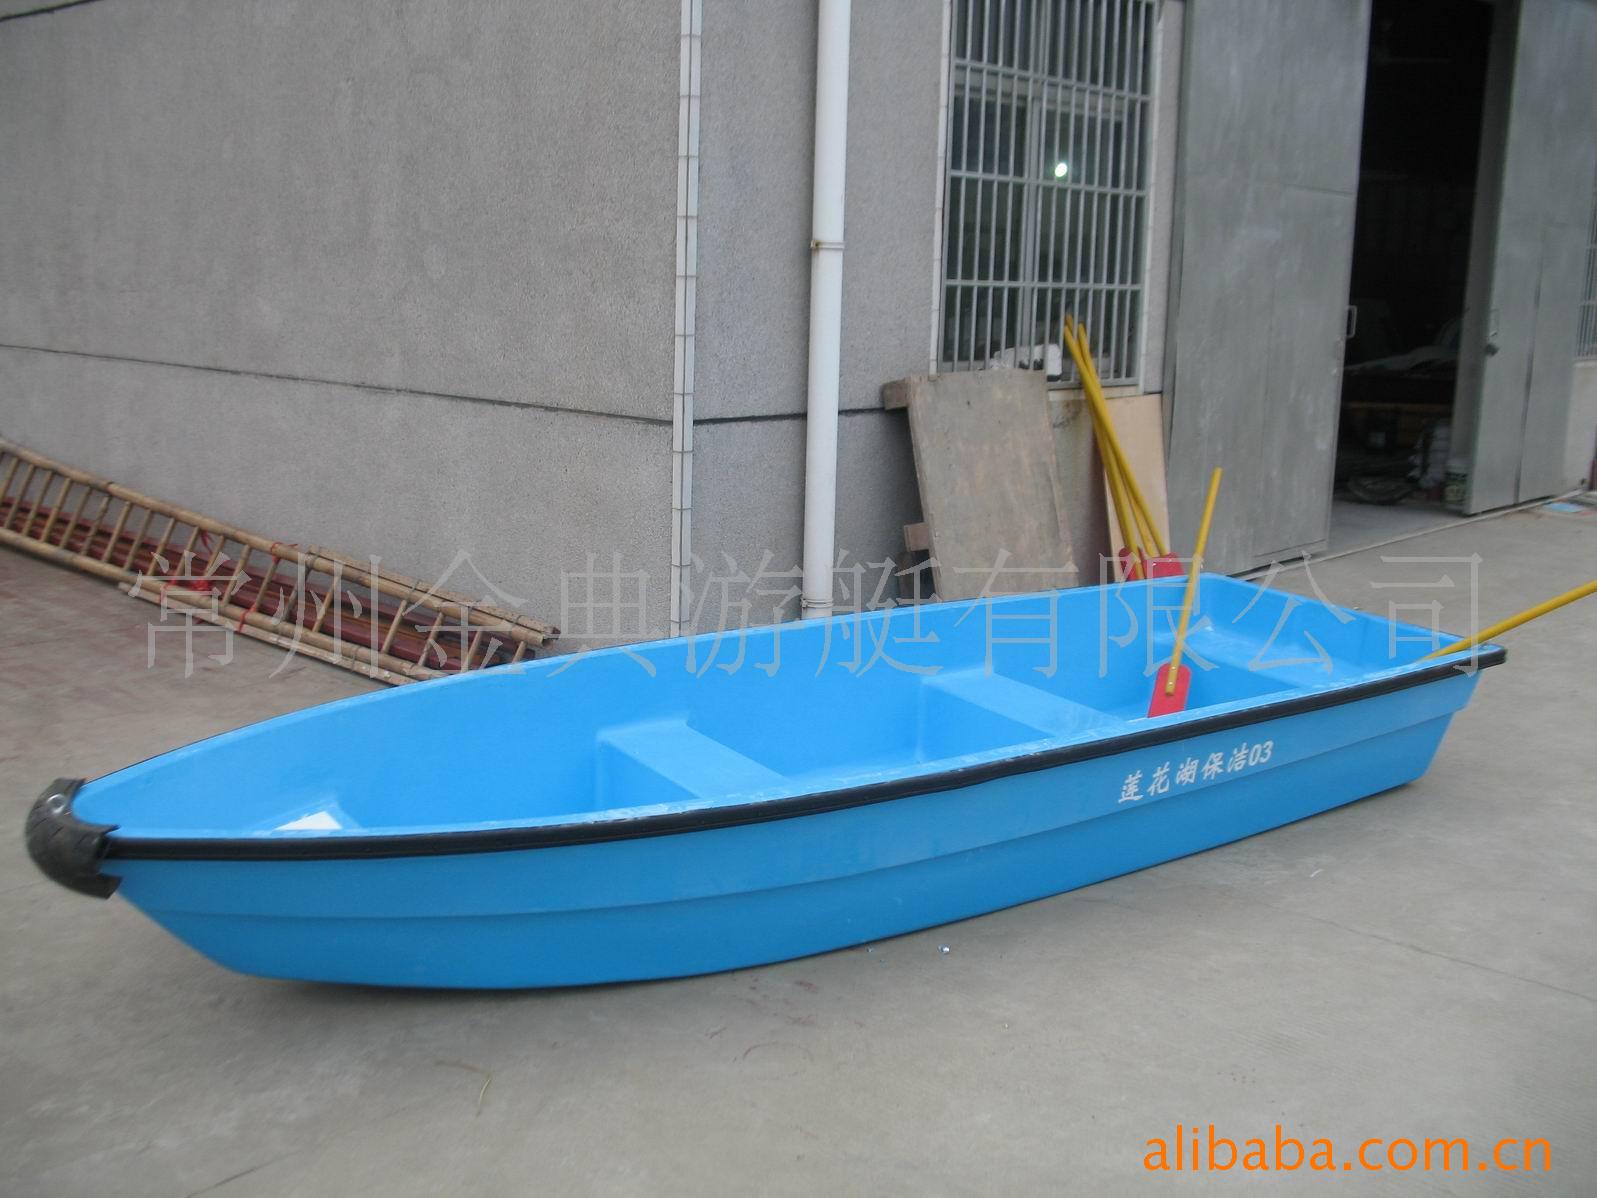 船舶-供应4.2米6人双层手划船-船舶尽在阿里巴